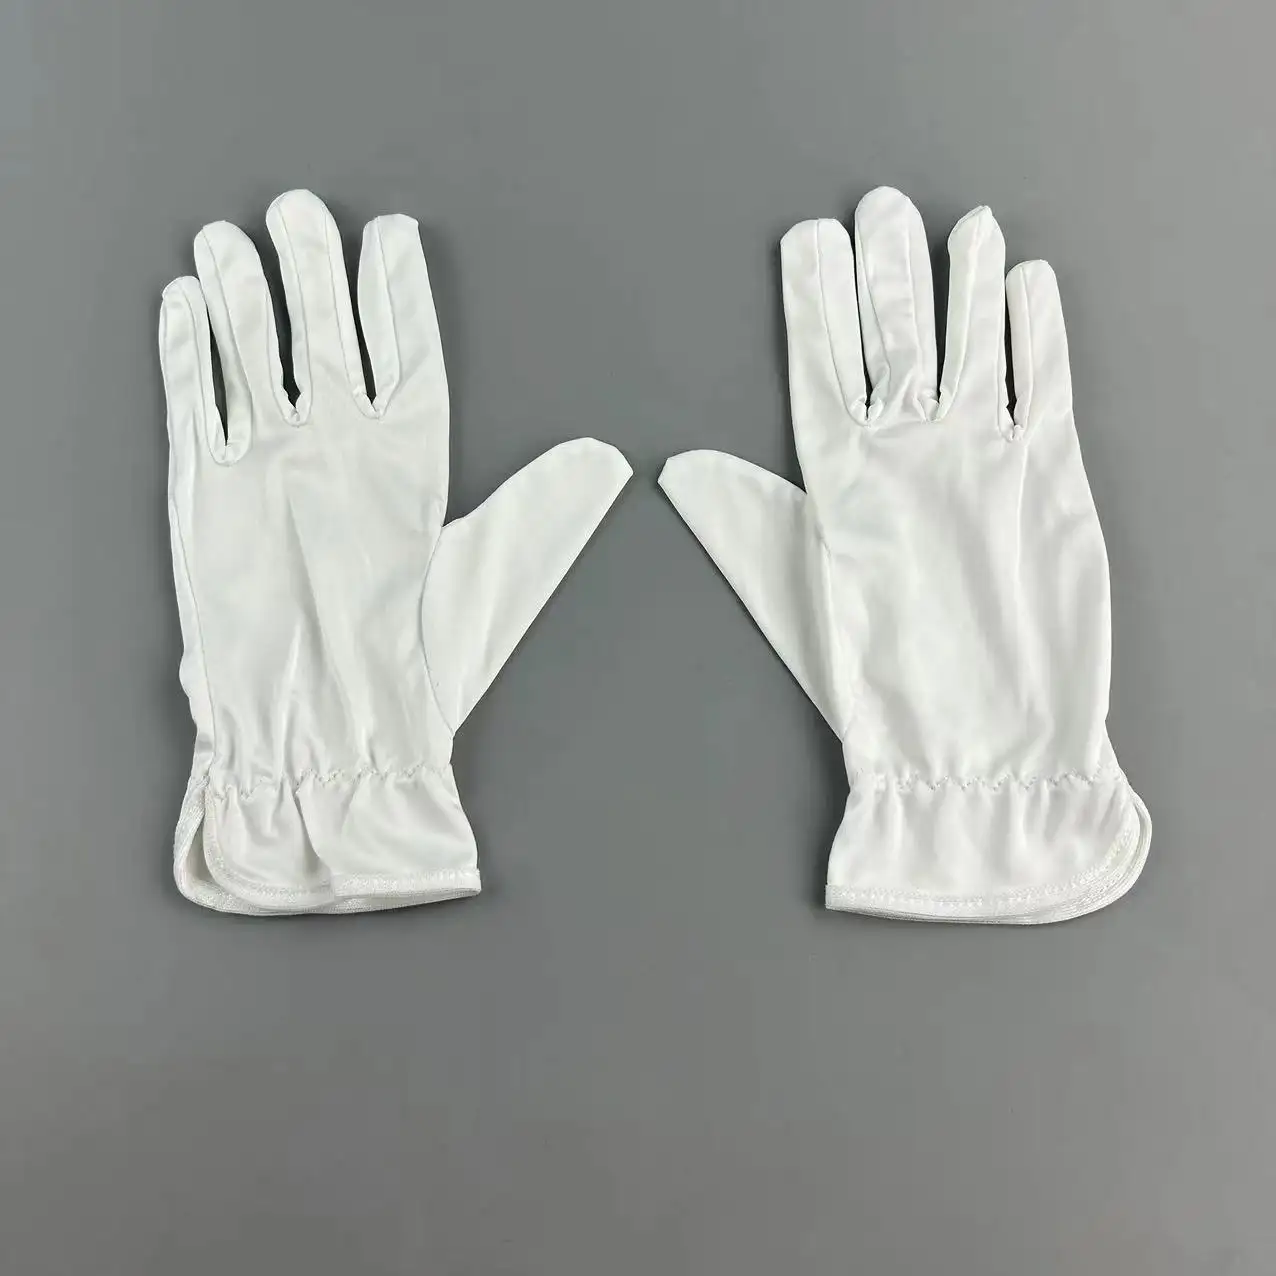 Gants en coton personnalisables de haute qualité Inspection polissage nettoyage gants respirants en microfibre blanche